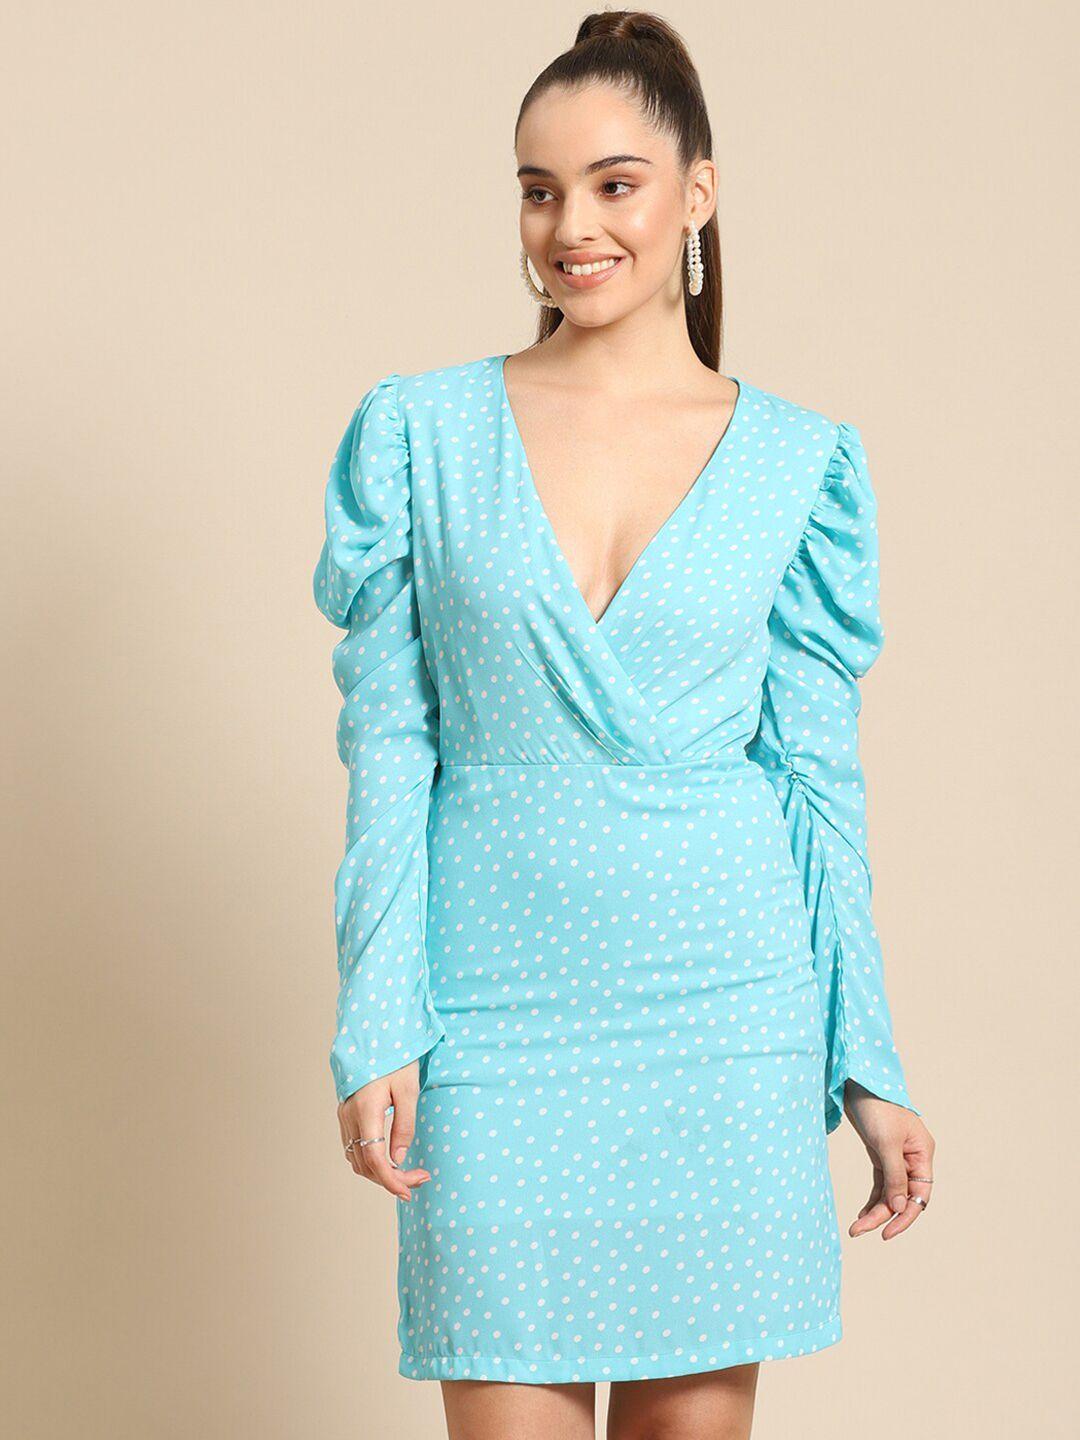 dodo & moa women turquoise blue & white polka dots printed wrap dress